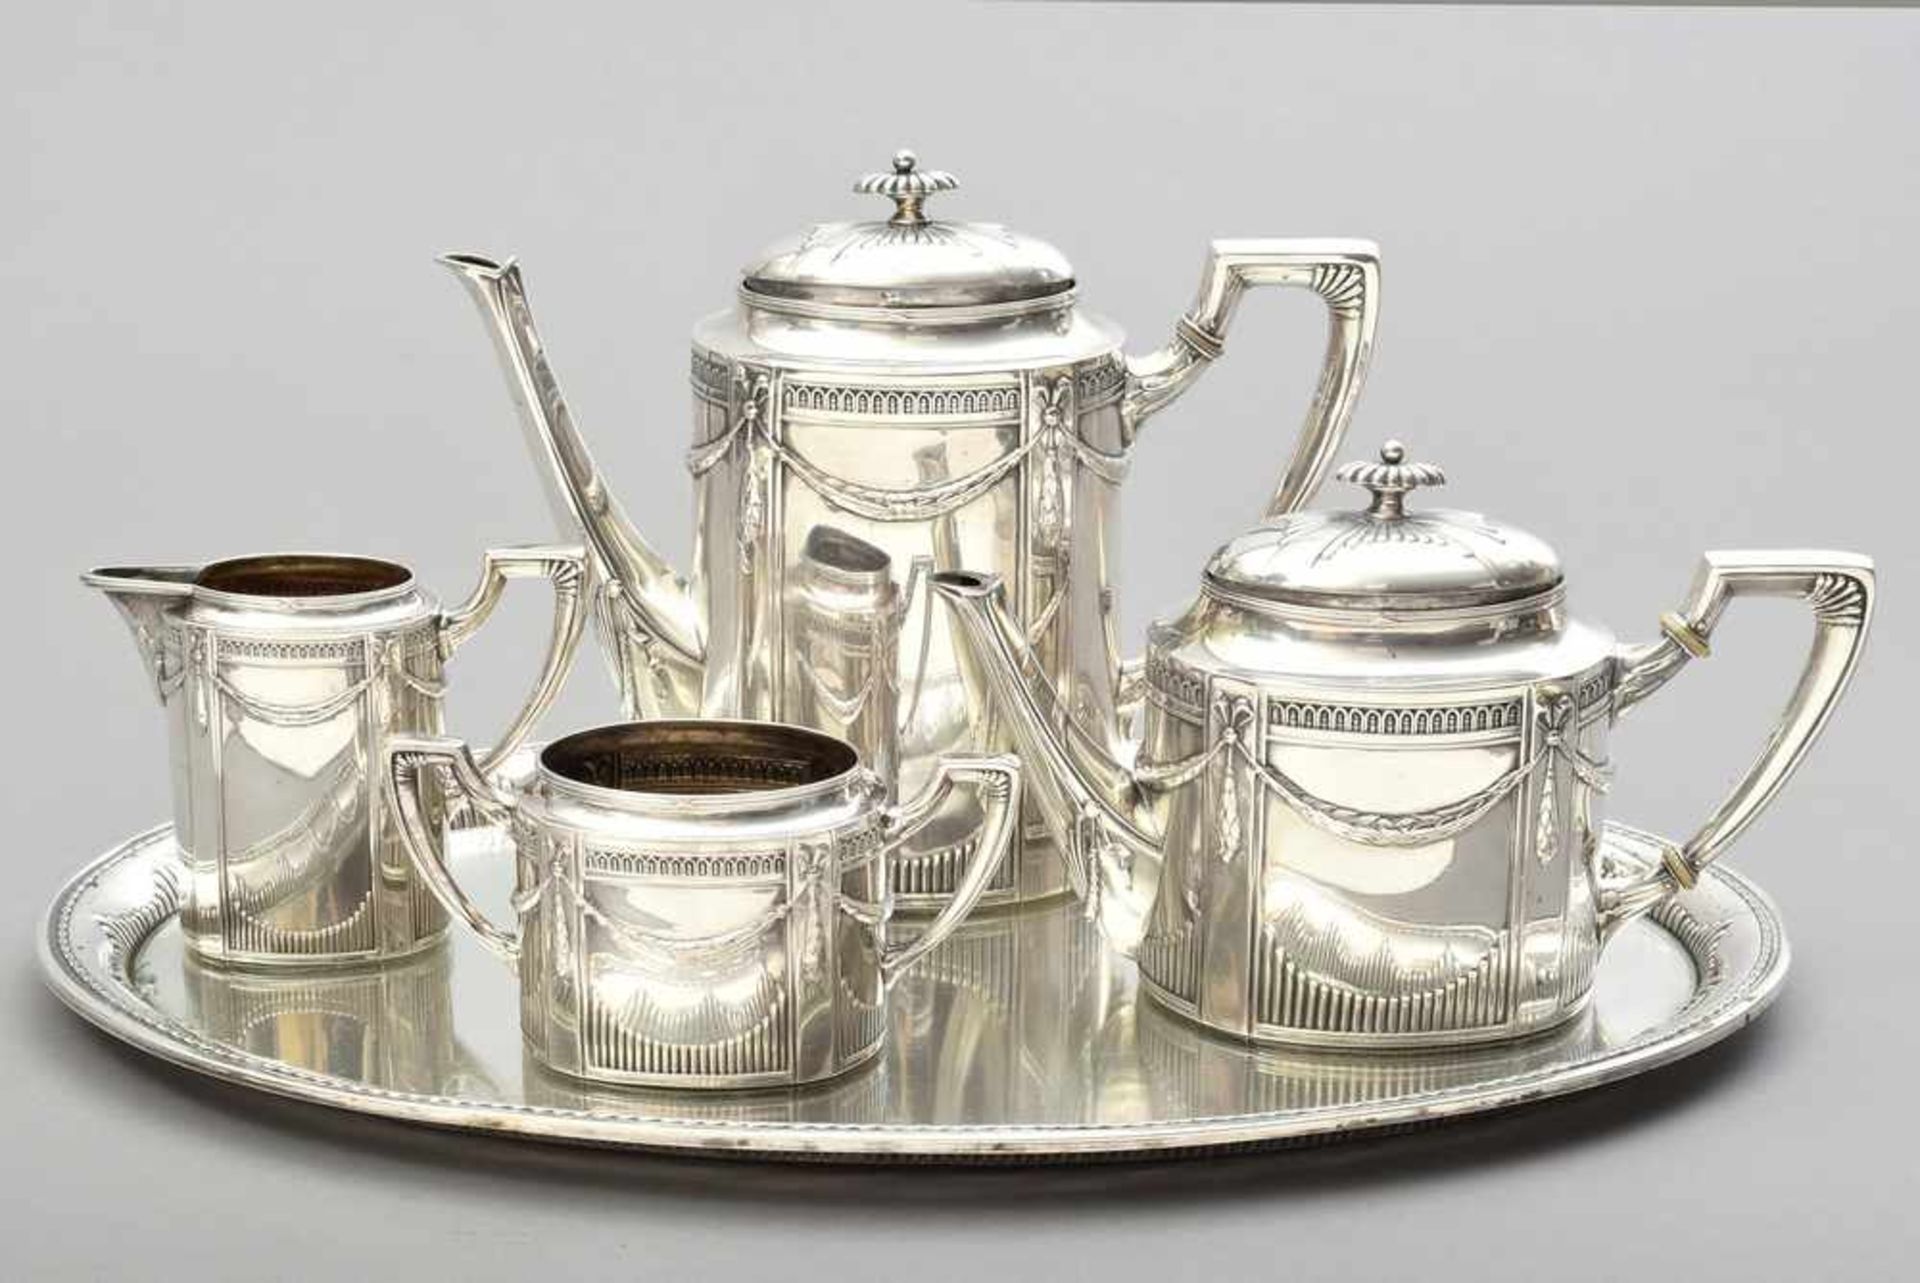 5 Teile klassizist. Kaffee-Tee-Set mit Lorbeerfestons und Strahlendekor, um 1890/1910, Wilhelm